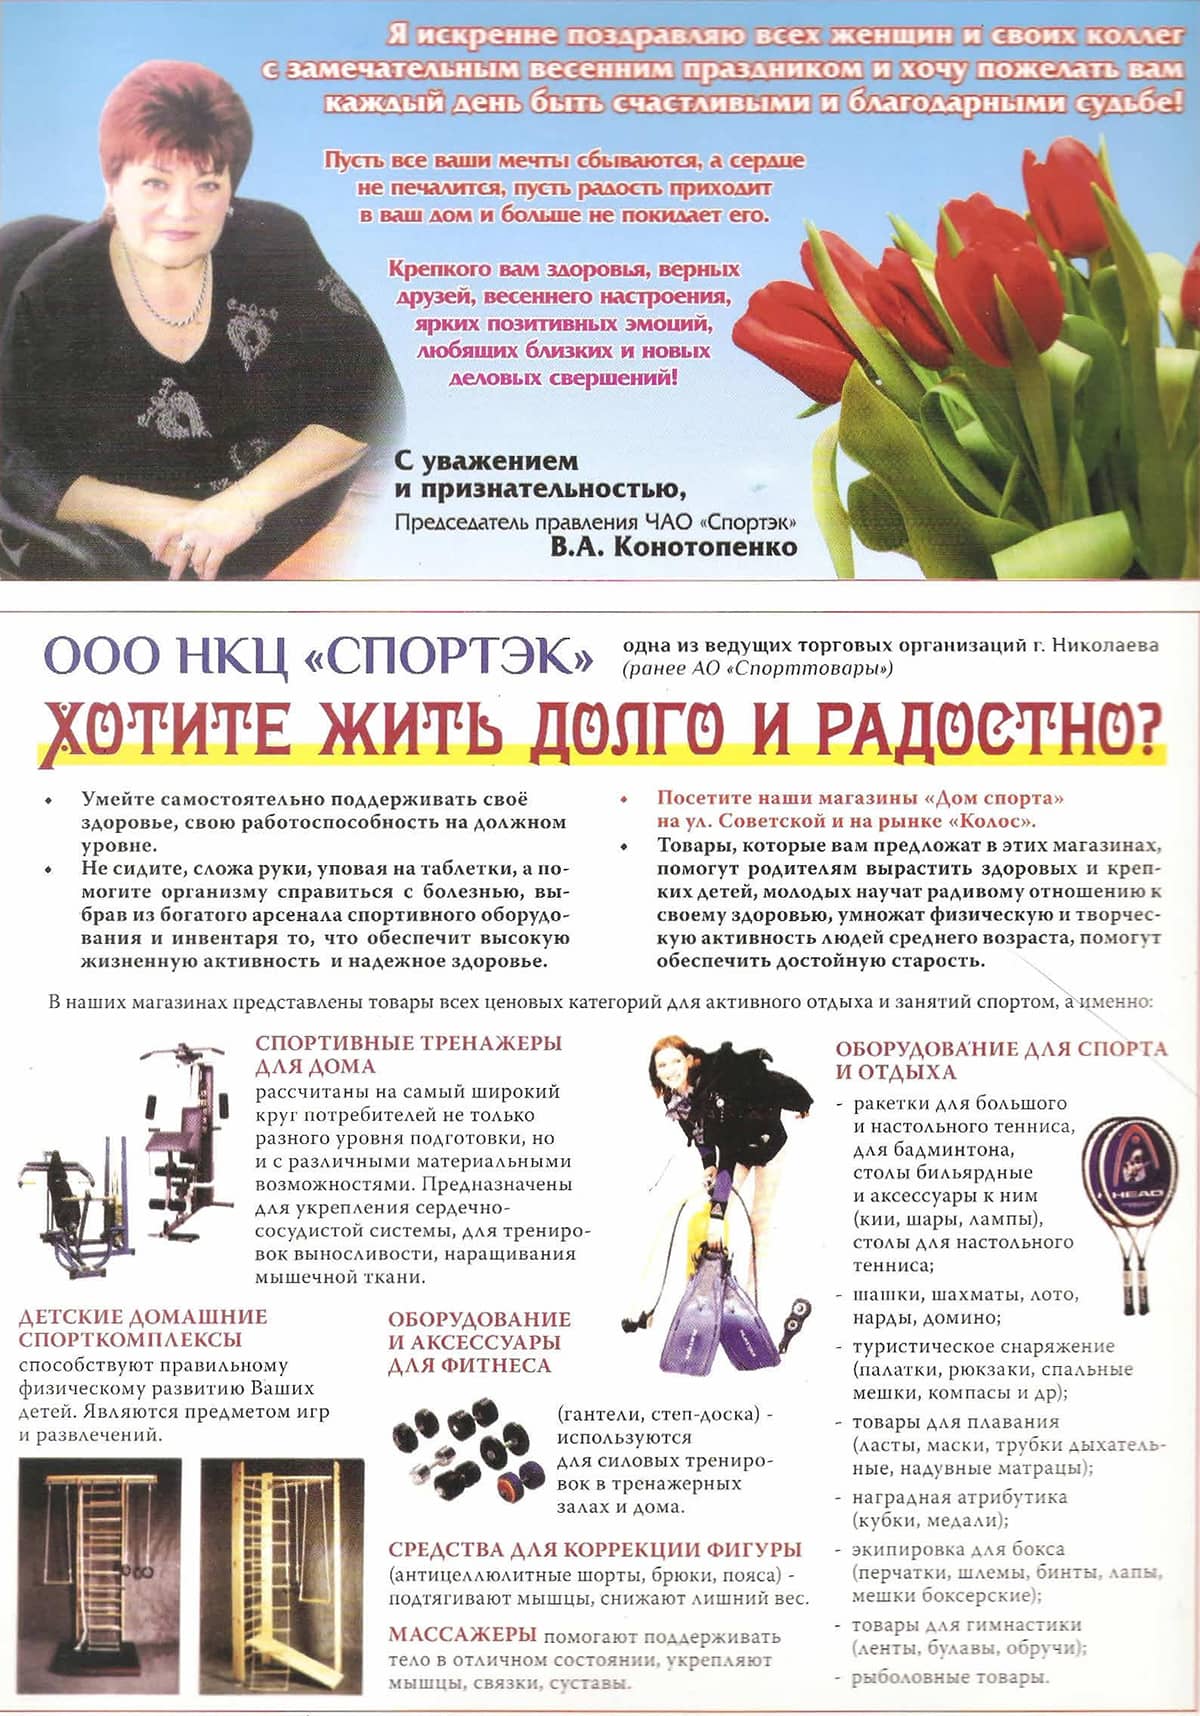 Статья во Всеукраинском общественно-политическом журнале "ИМЕНА" № 56 2014